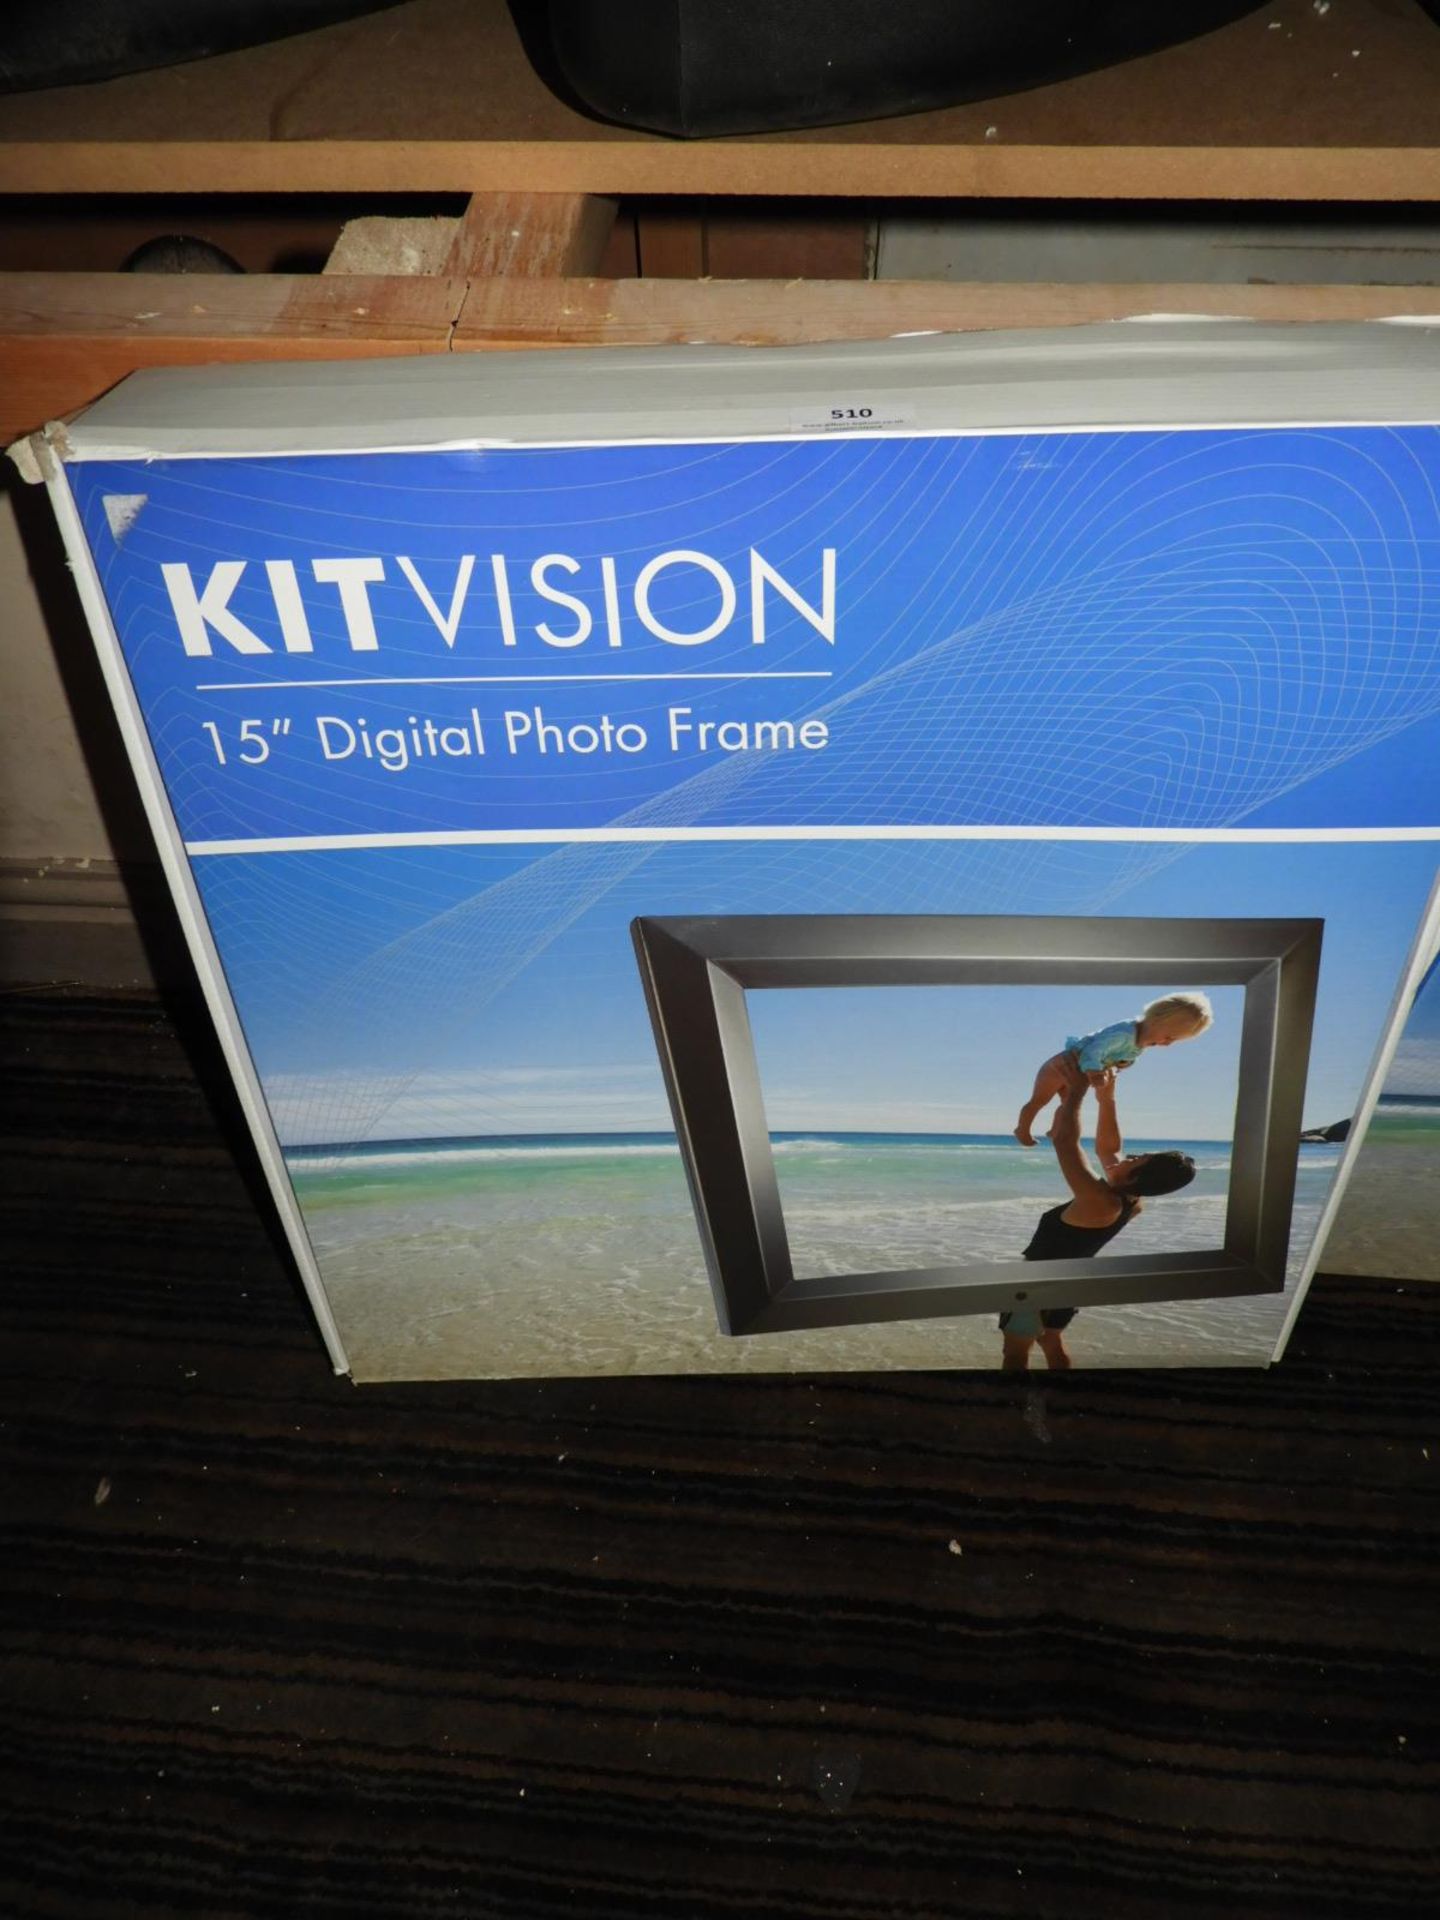 *Kit Vision 15" Digital Photo Frame